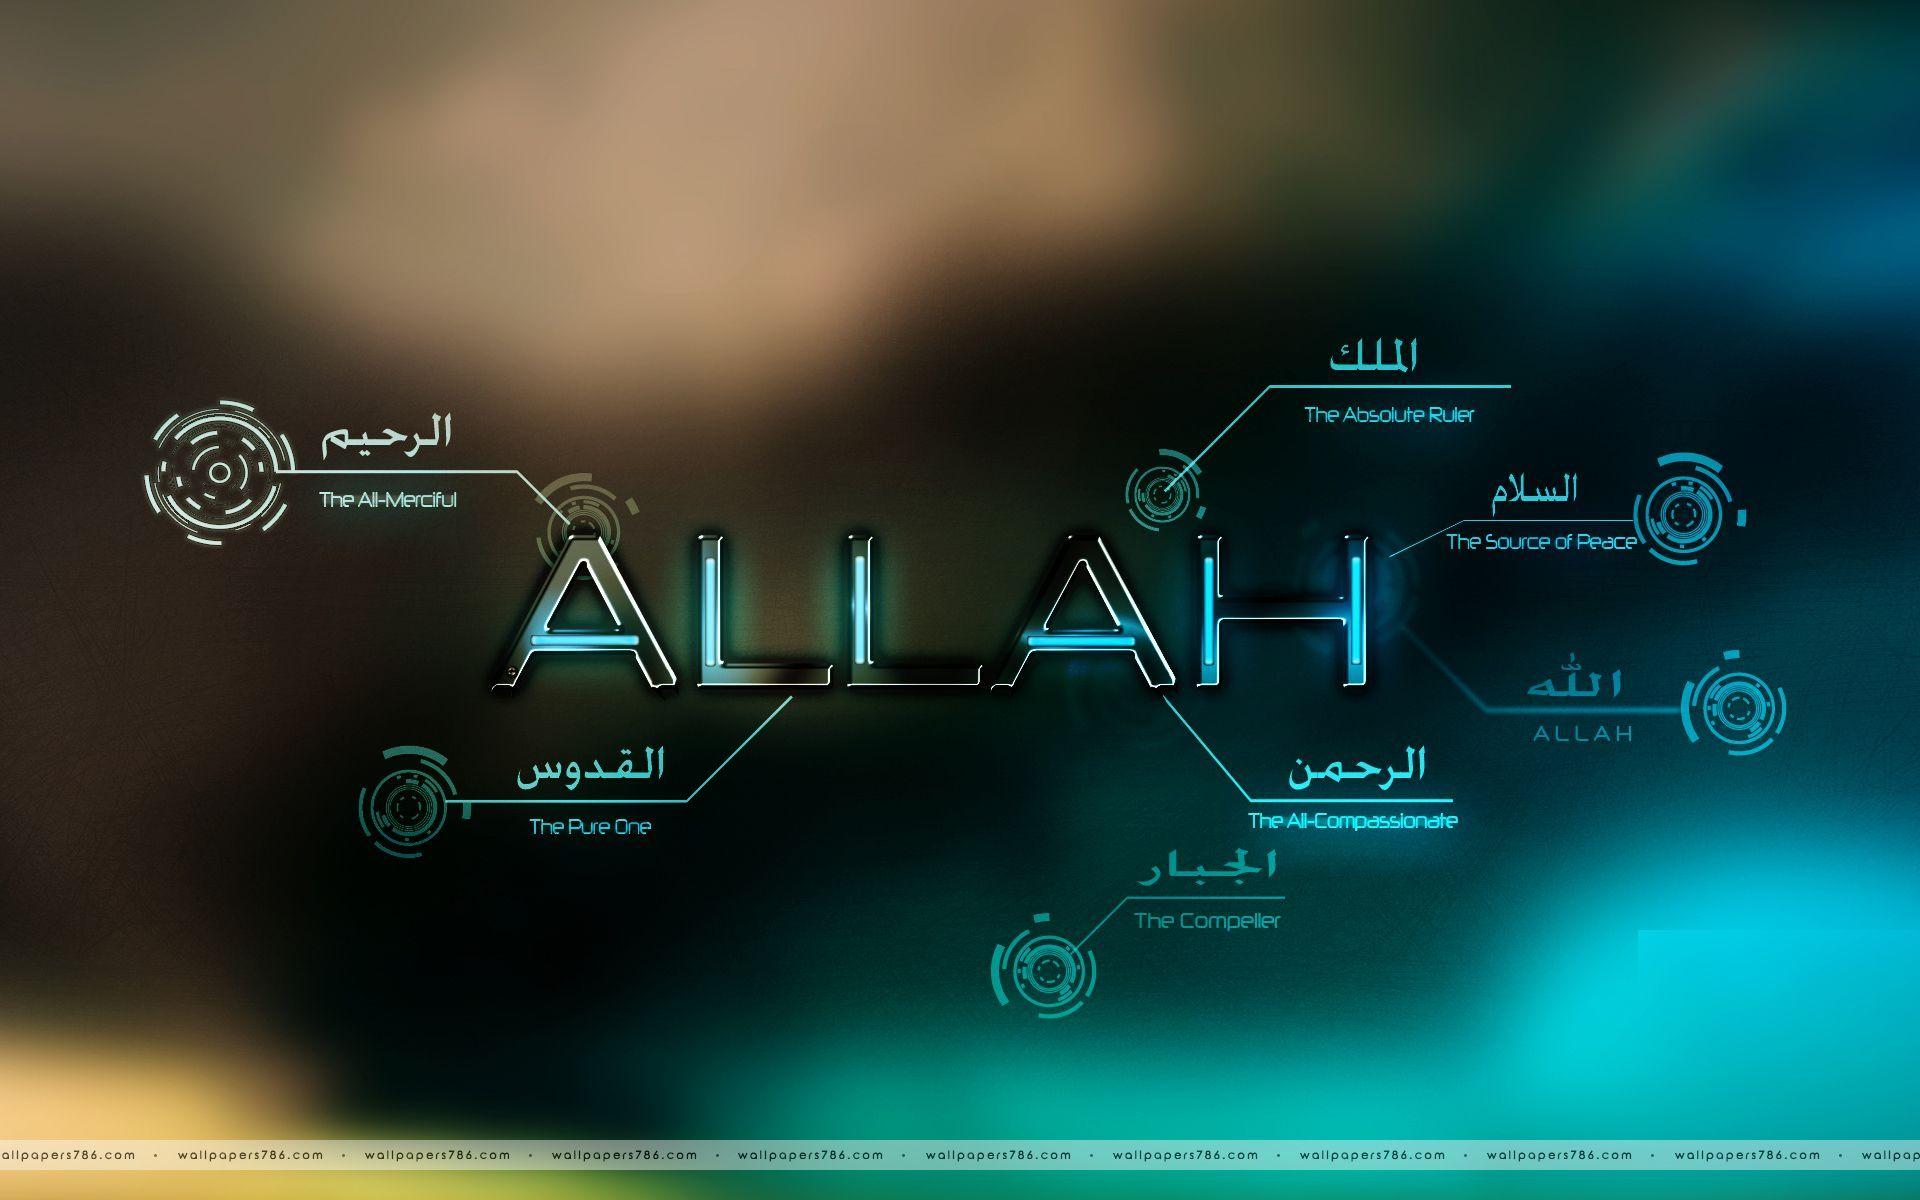 Allah Wallpapers HD 2016 - Wallpaper Cave